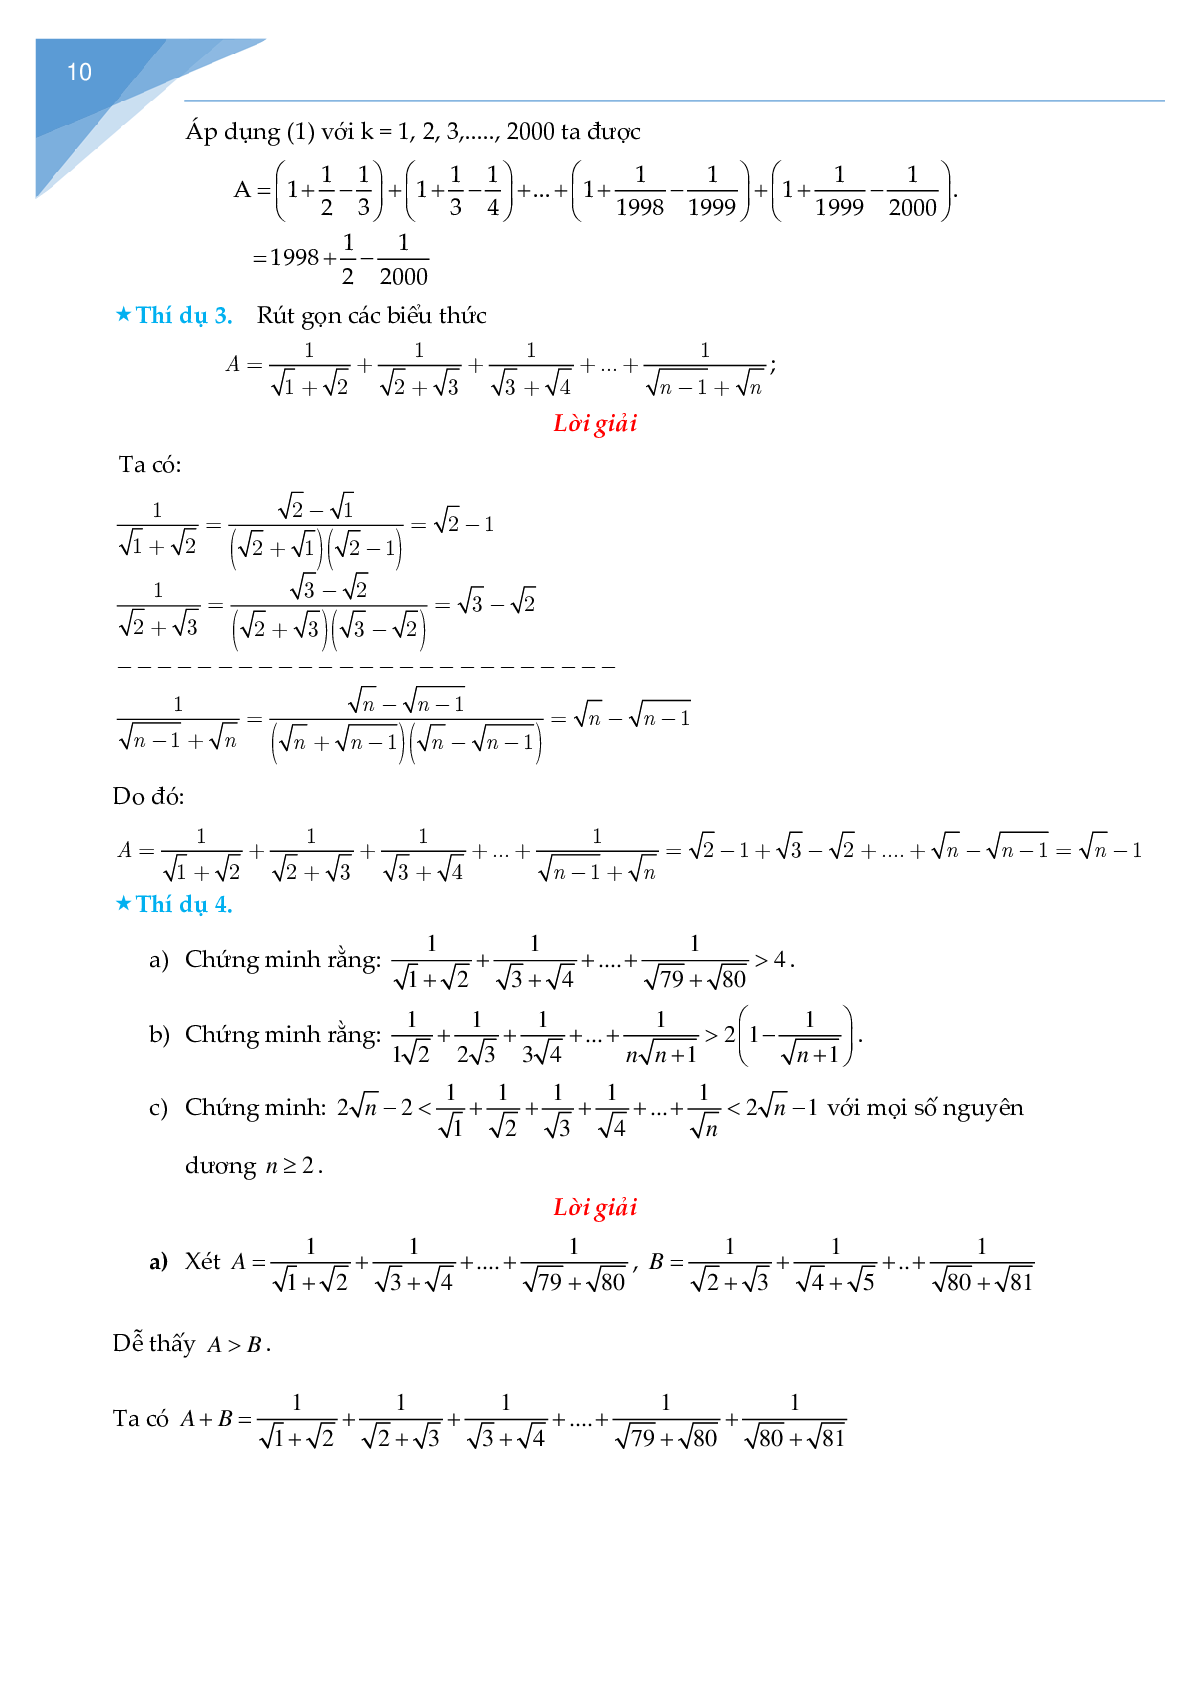 Rút gọn biểu thức chứa căn và bài toán liên quan (trang 10)